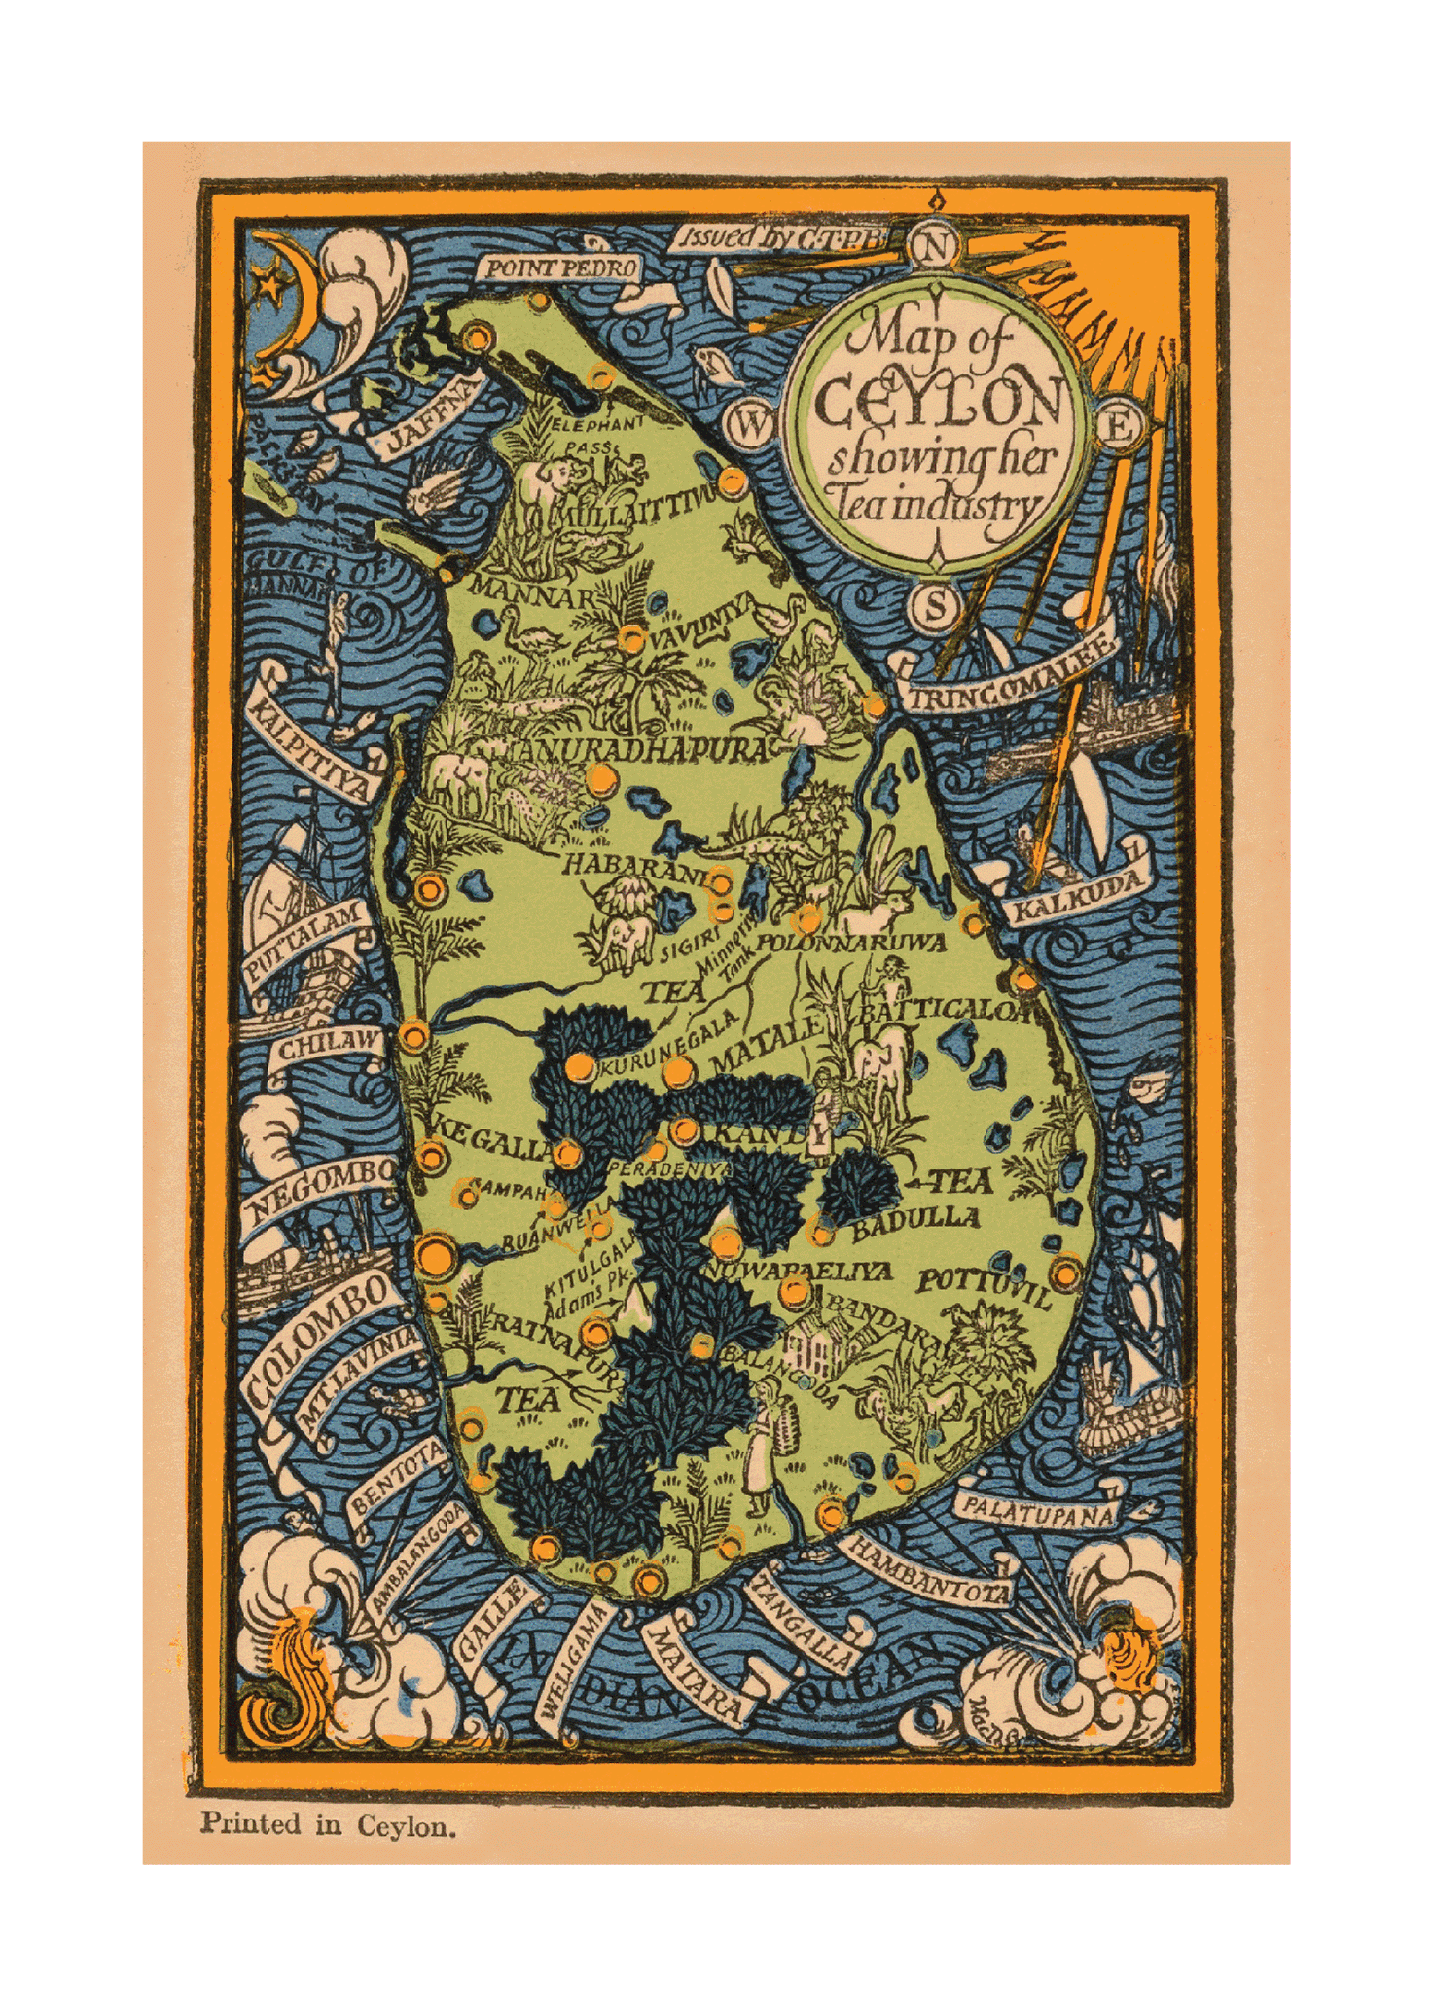 Ceylon - Mini Map - Her Tea & Other Industries, 1934.